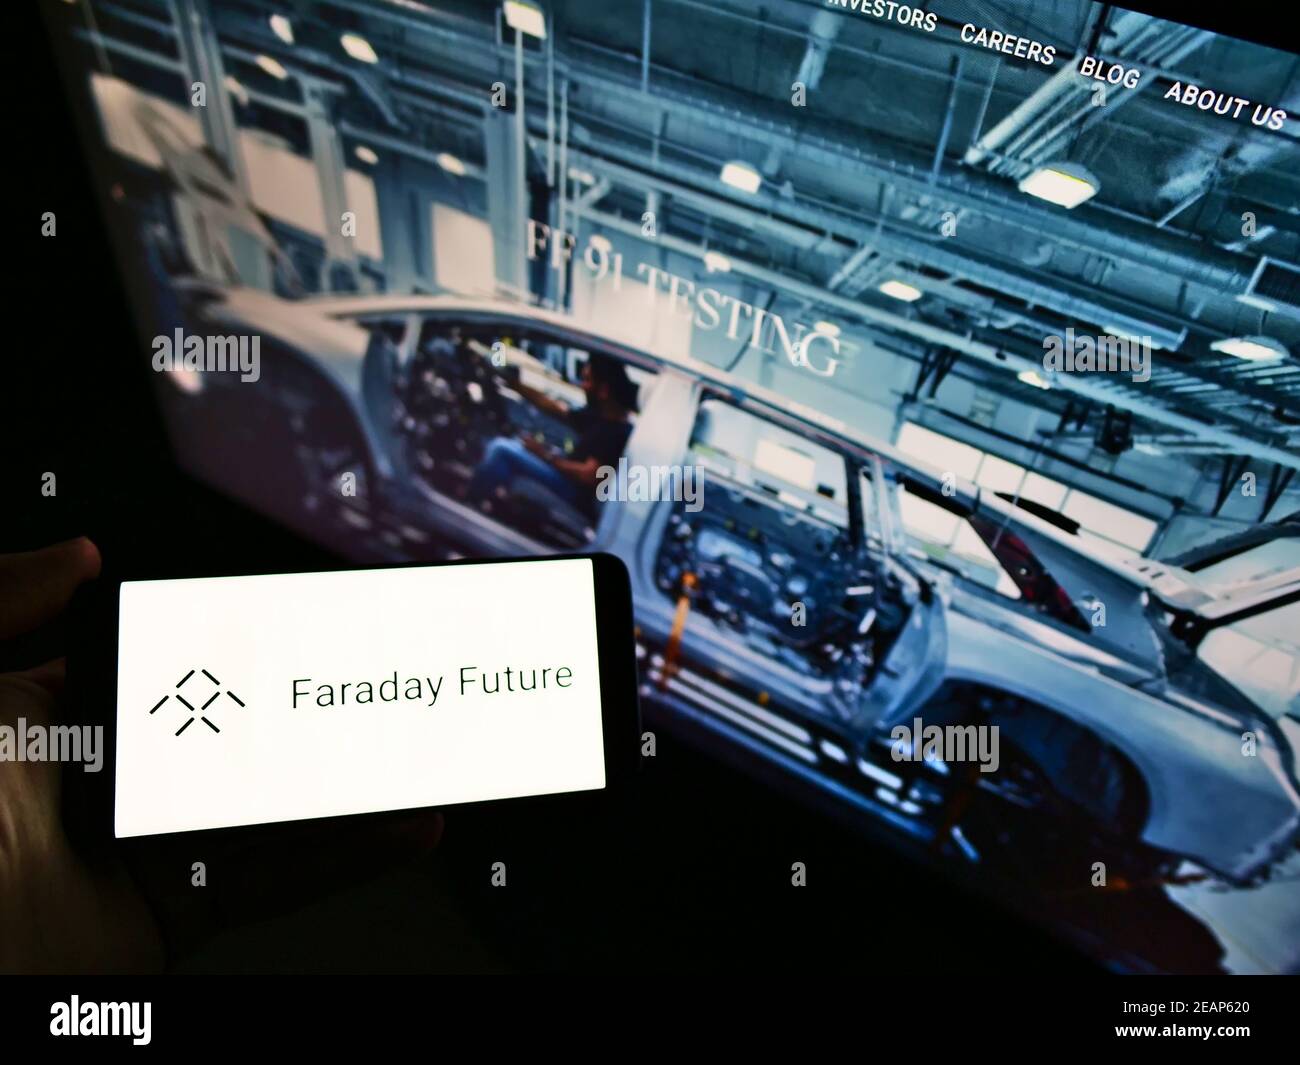 Persona che detiene smartphone con il logo della società americana di veicoli elettrici Faraday Future Inc. Di fronte al sito web. Mettere a fuoco il display del telefono. Foto Stock